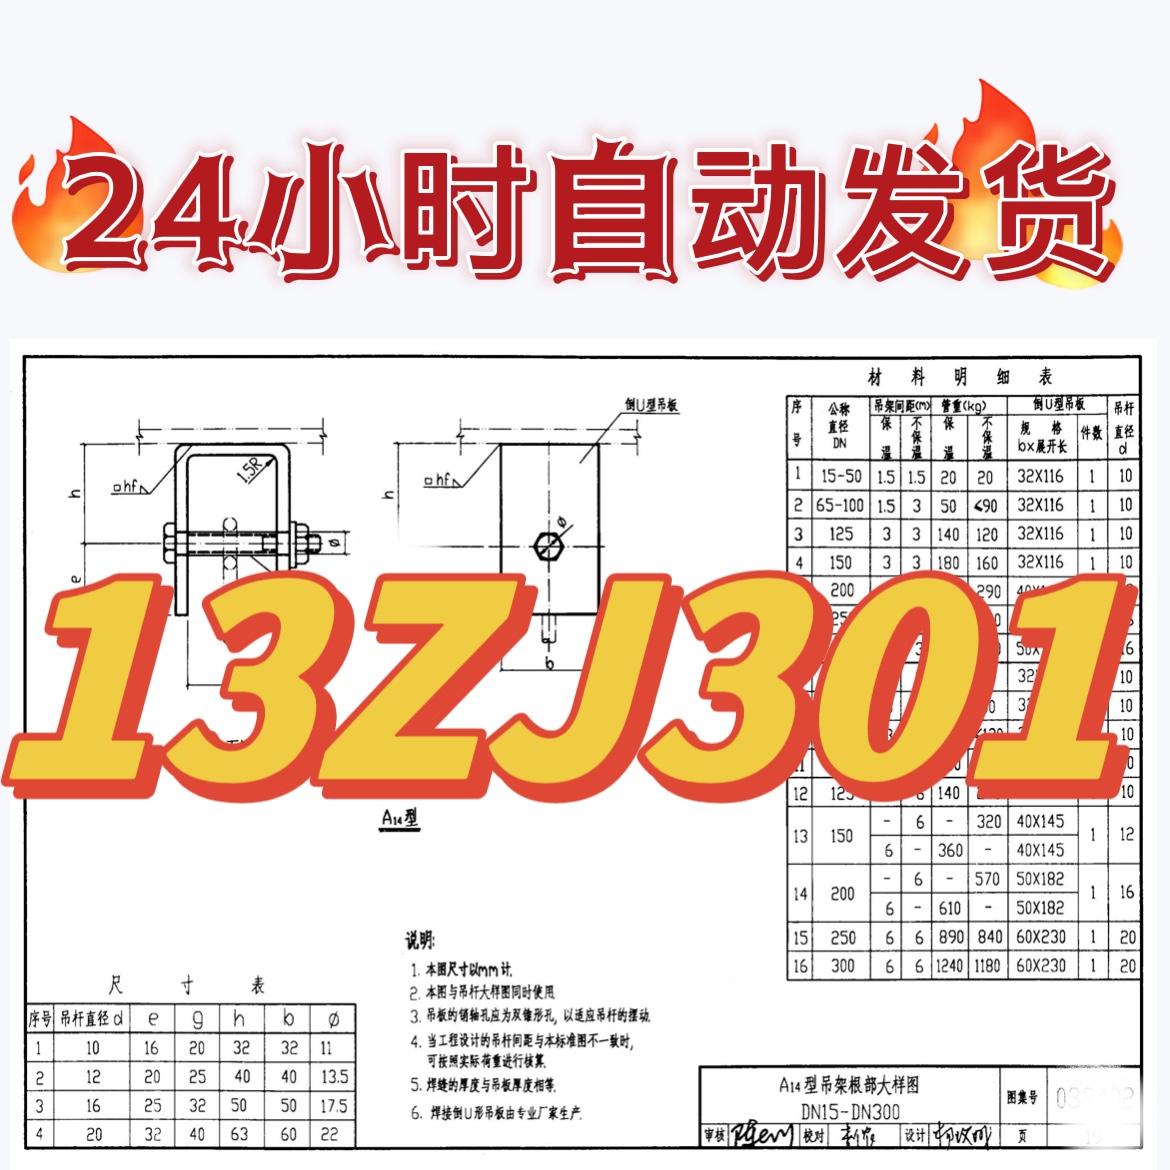 13ZJ301建筑无障碍设施中南标设计图集素材高清源文件